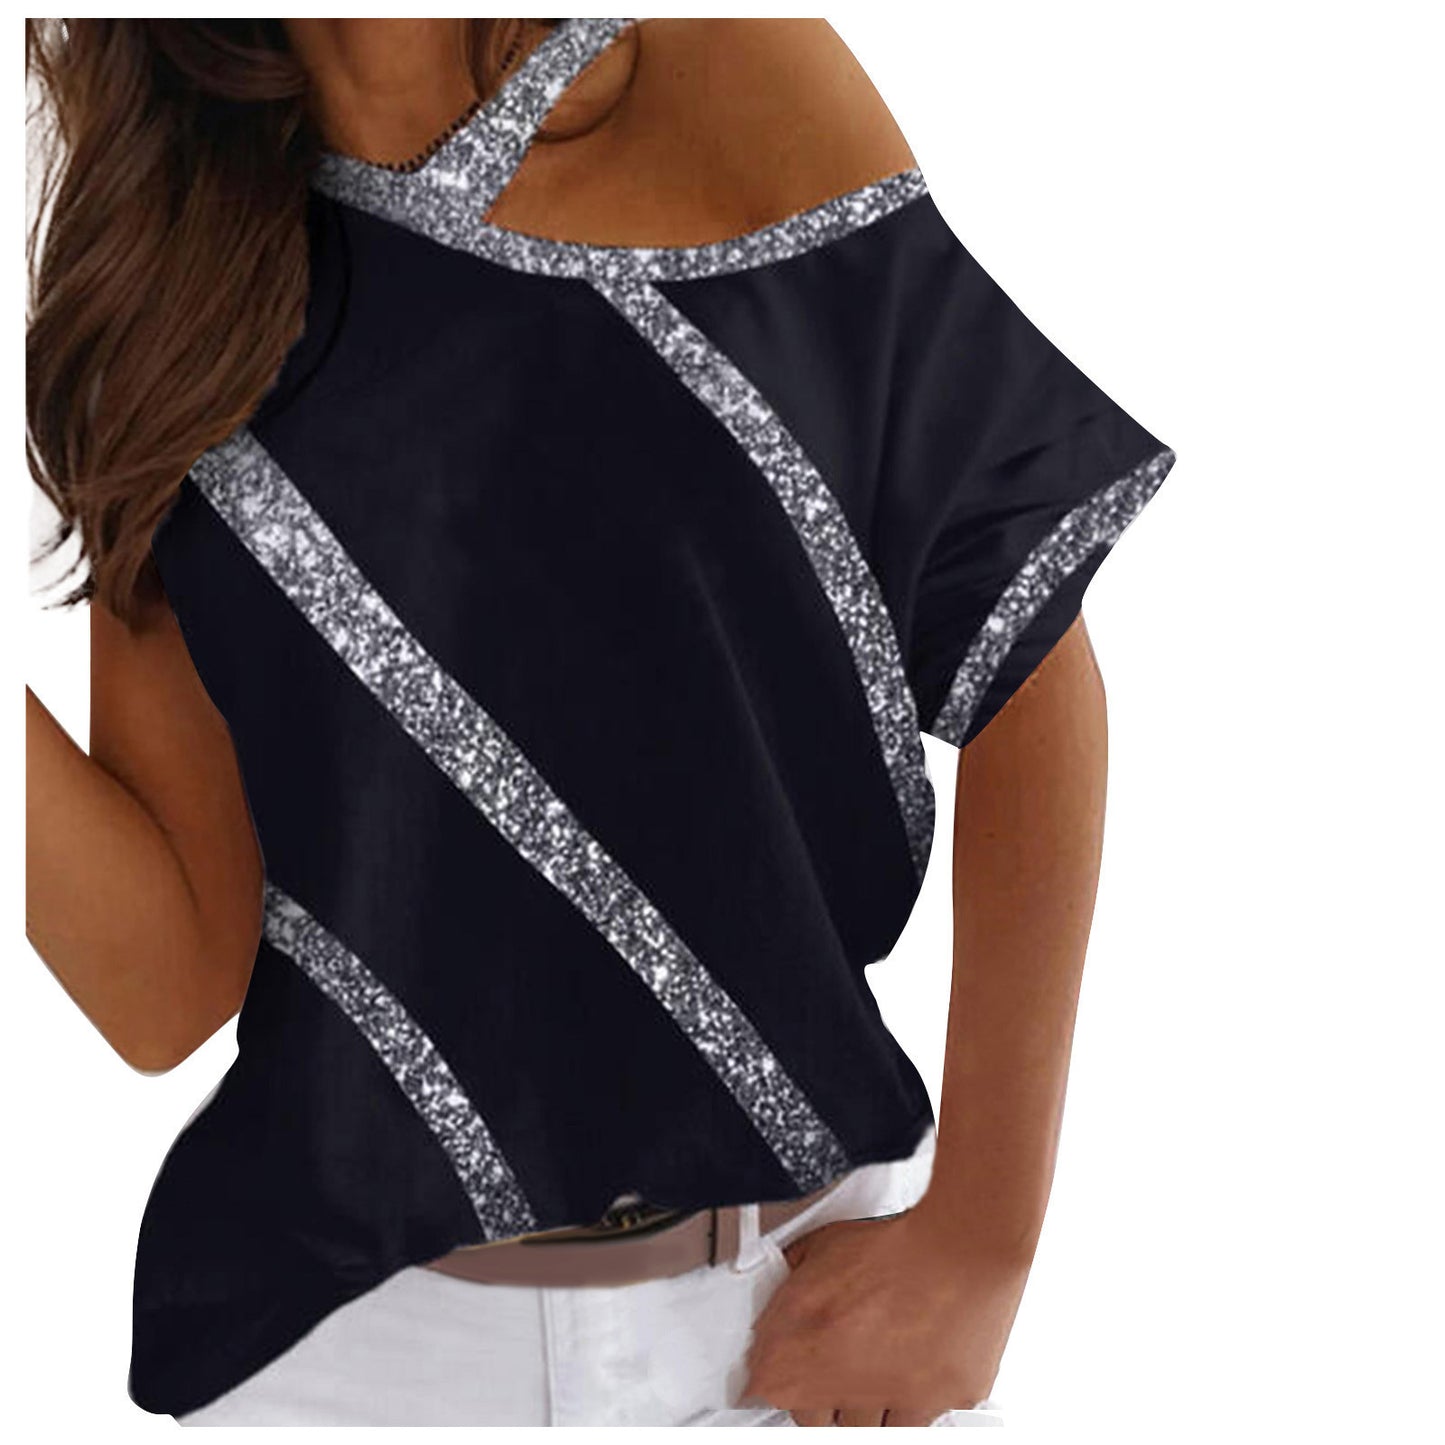 New Off-shoulder Hanging Neck Short-sleeved T-shirt For Women